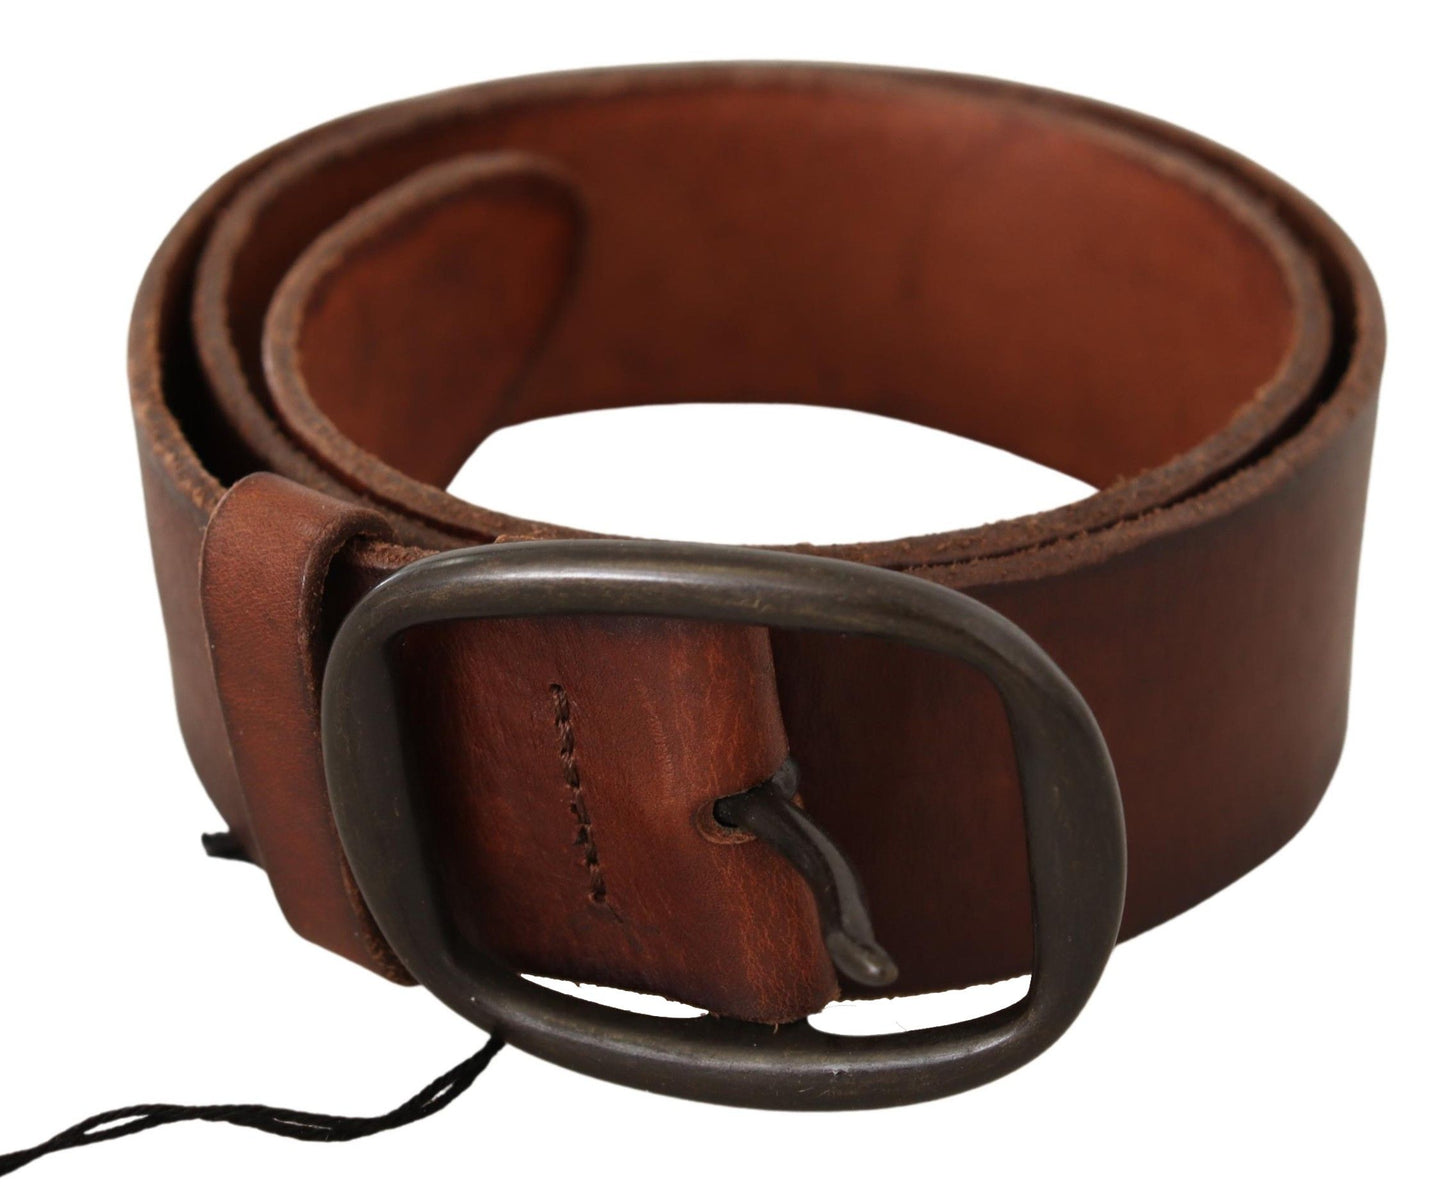 Chic Genuine Leather Waist Belt in Brown